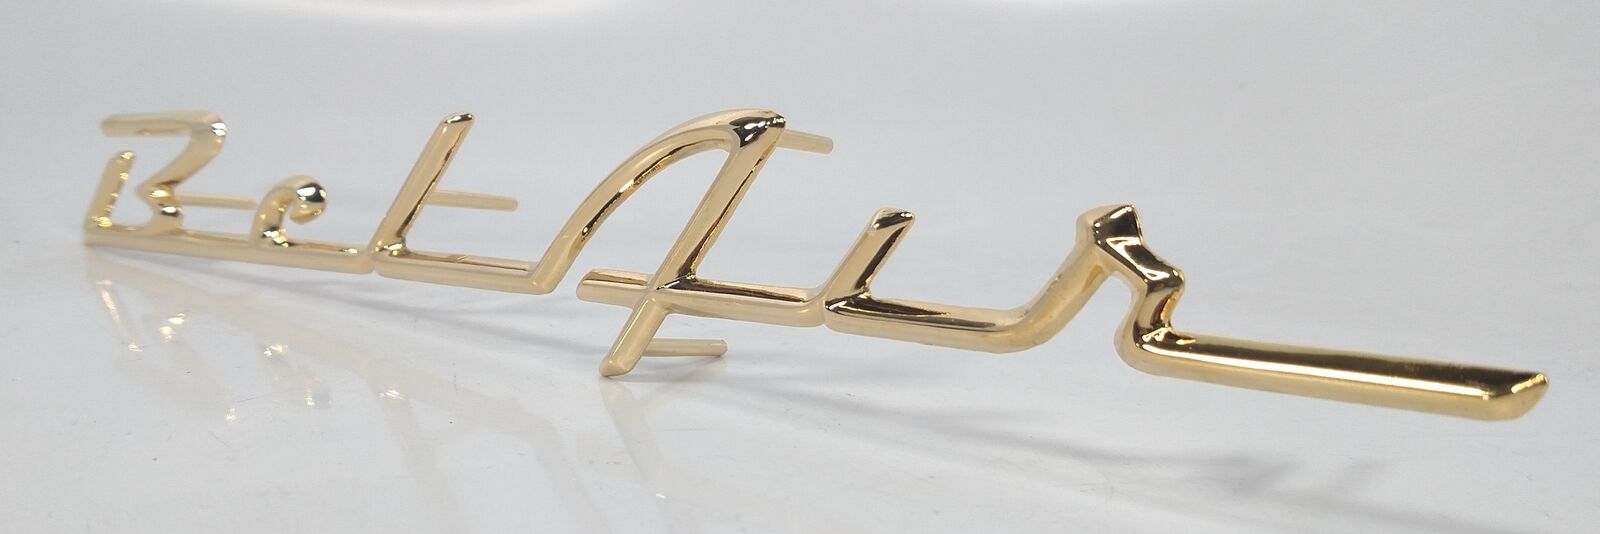 Bel Air Gold Quarter Panel Script Emblem for 1957 Chevy Rear Side Fender